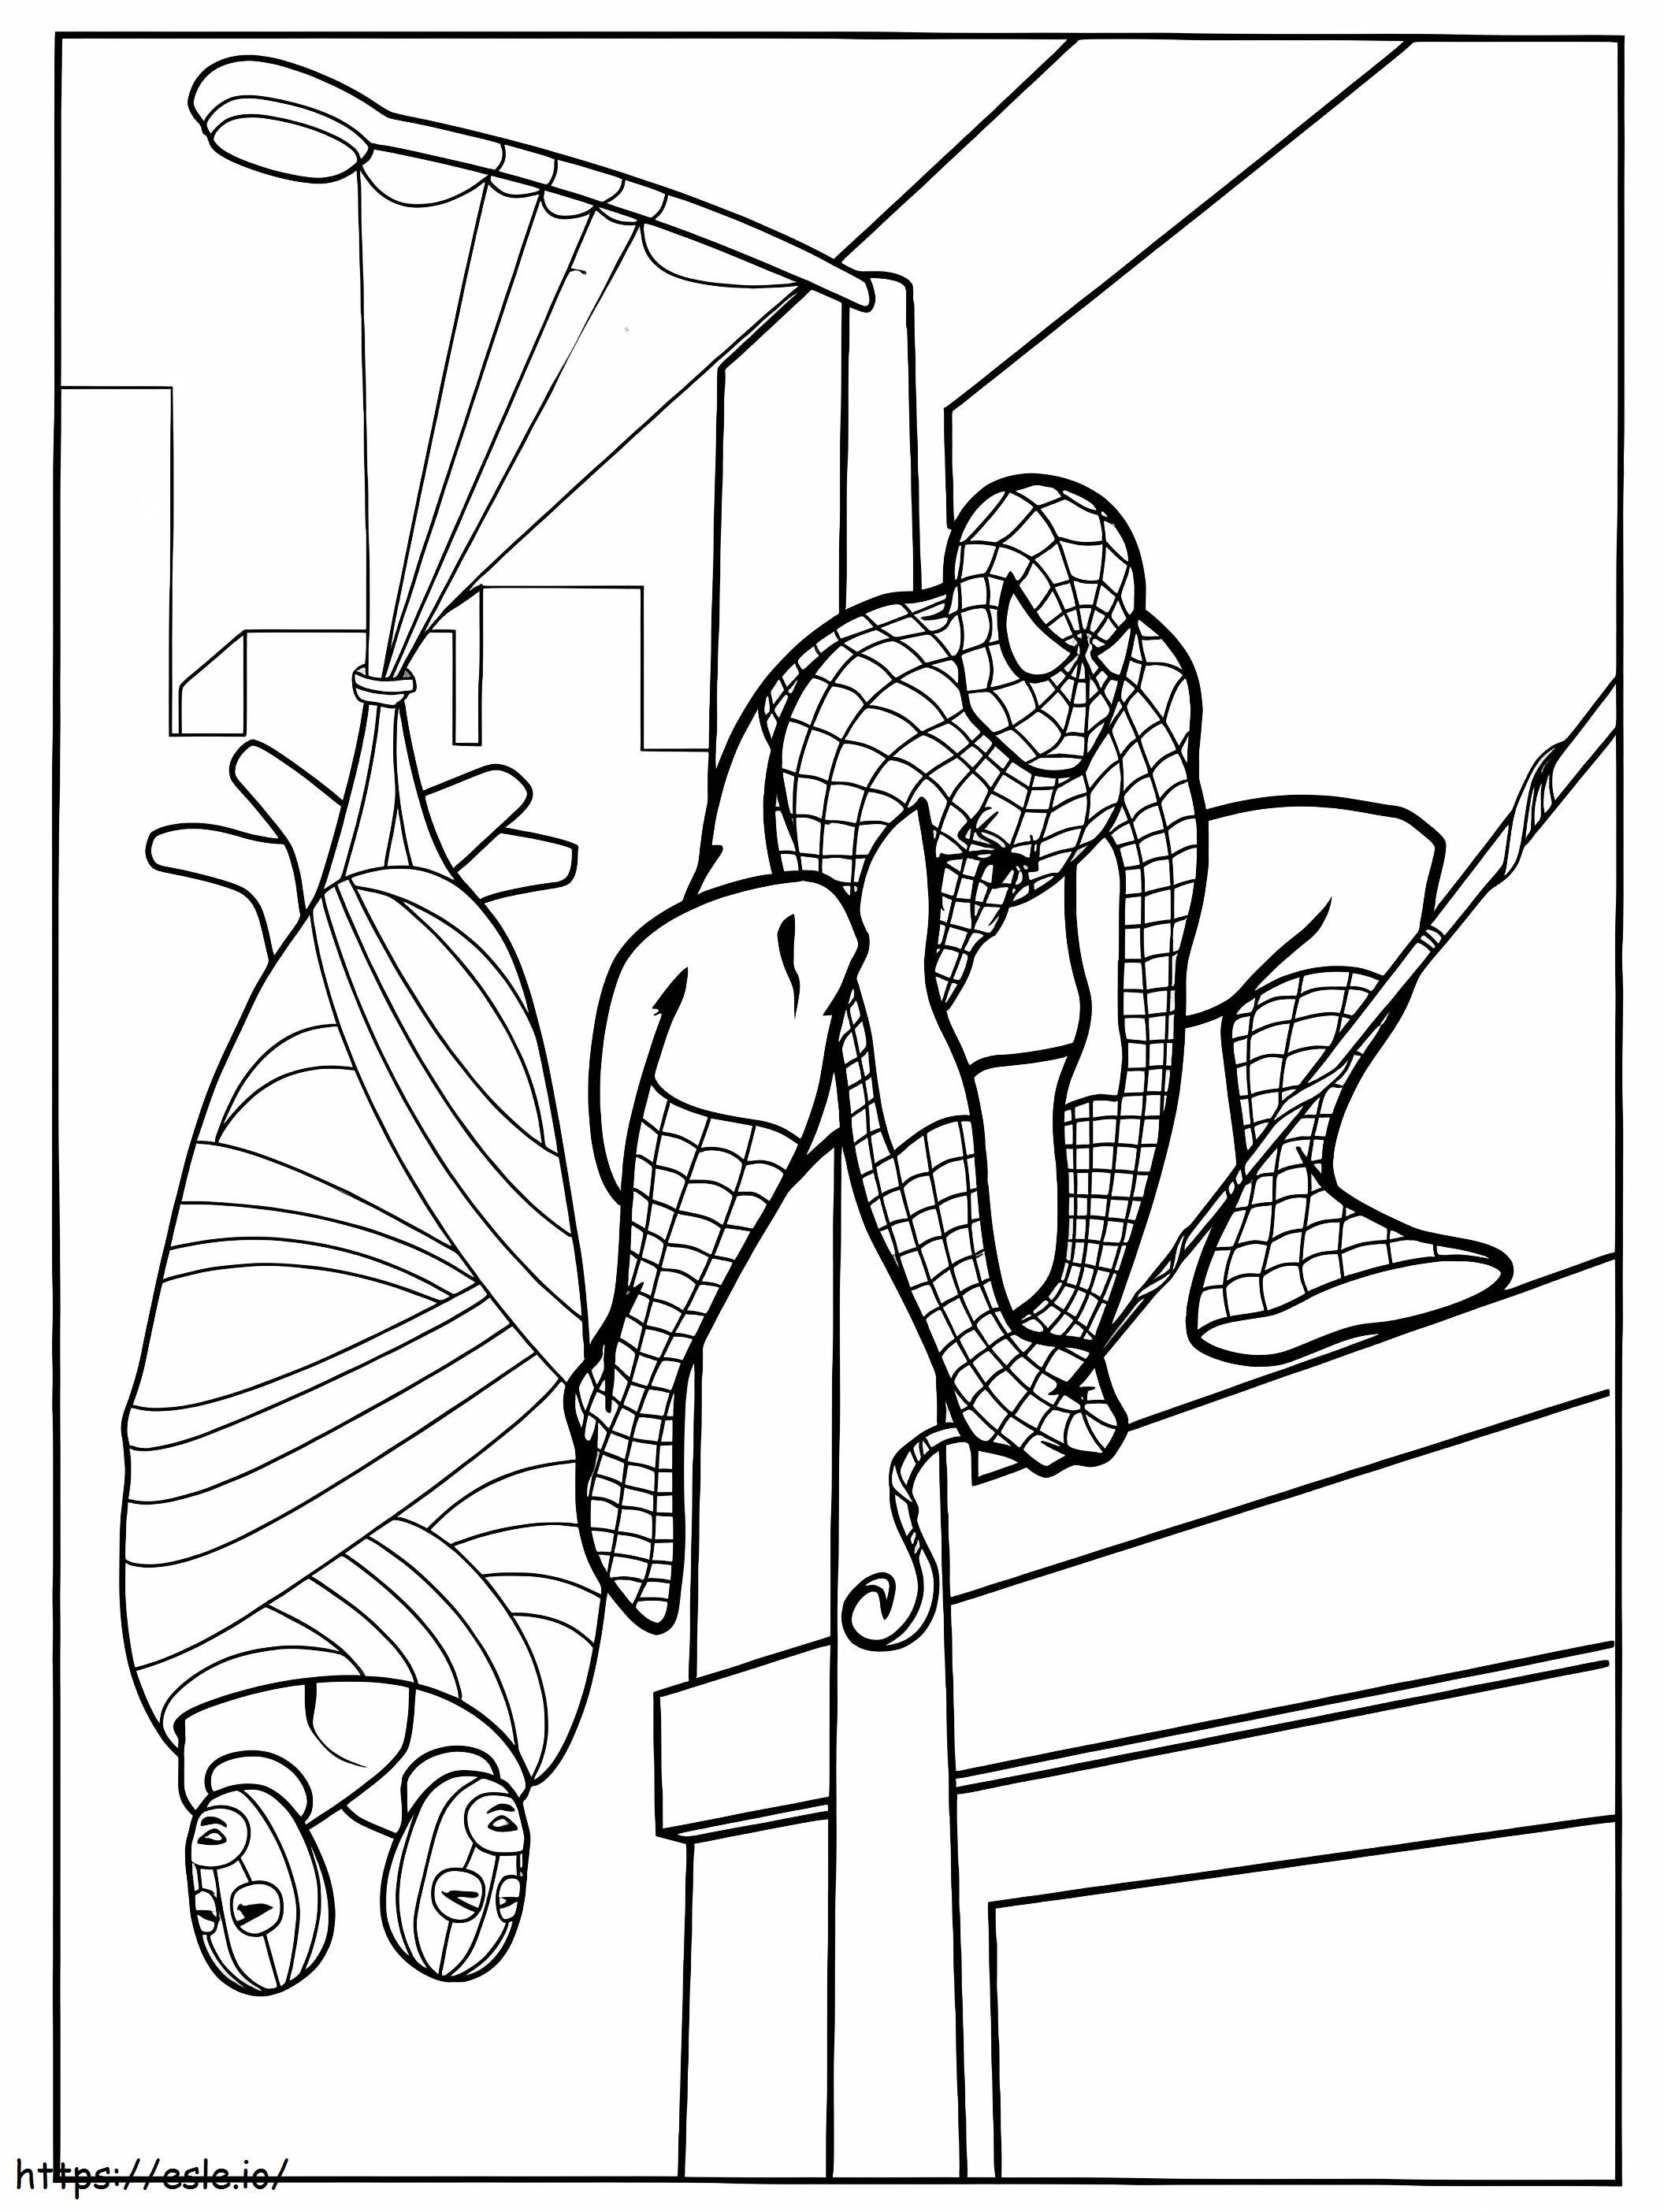 Spiderman łapie złodzieja kolorowanka